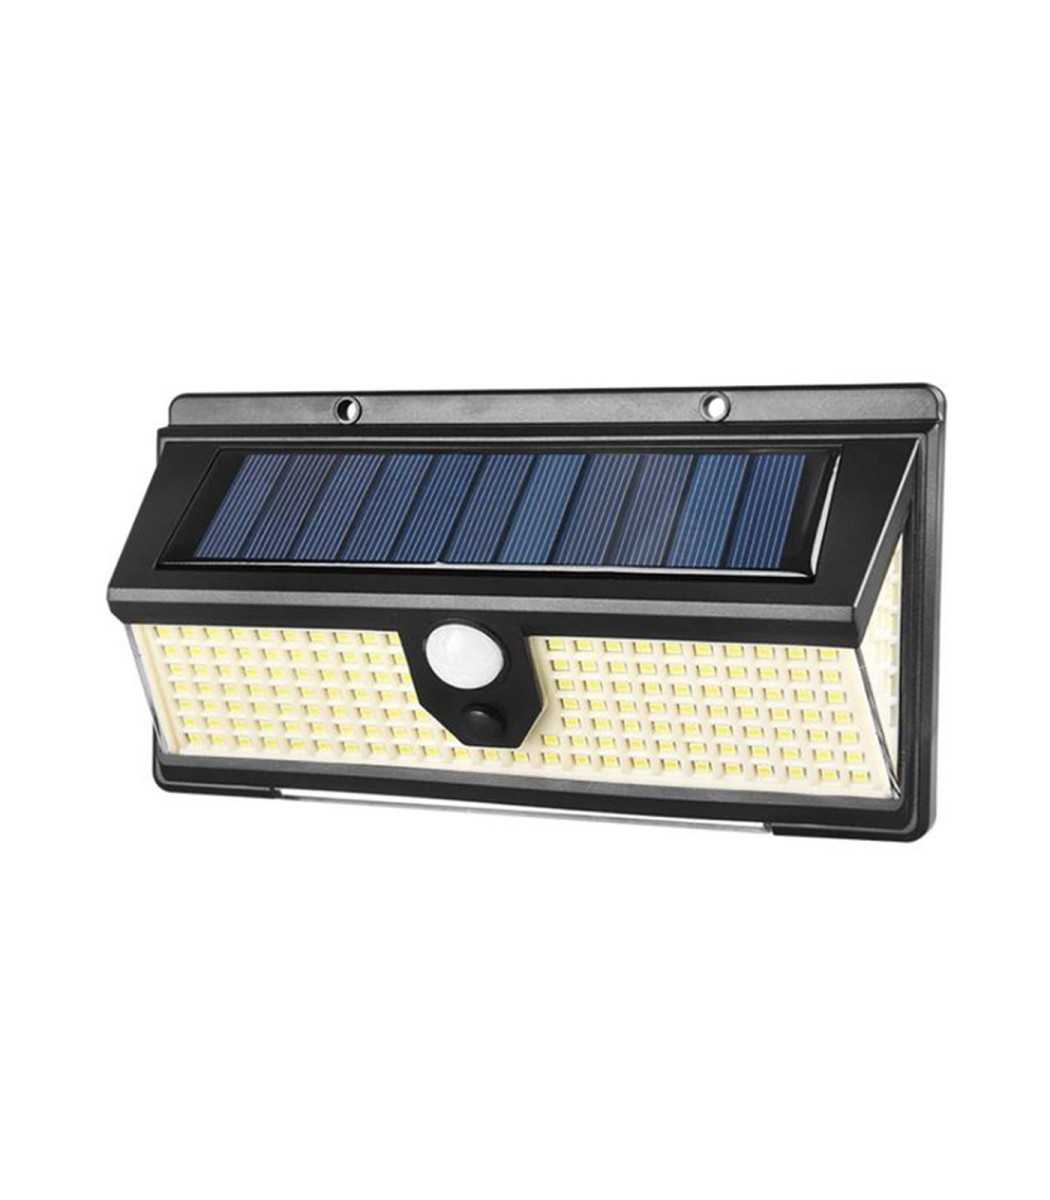 Solar Body Sensor Light Lamp PIR Motion Sensor Wall Light